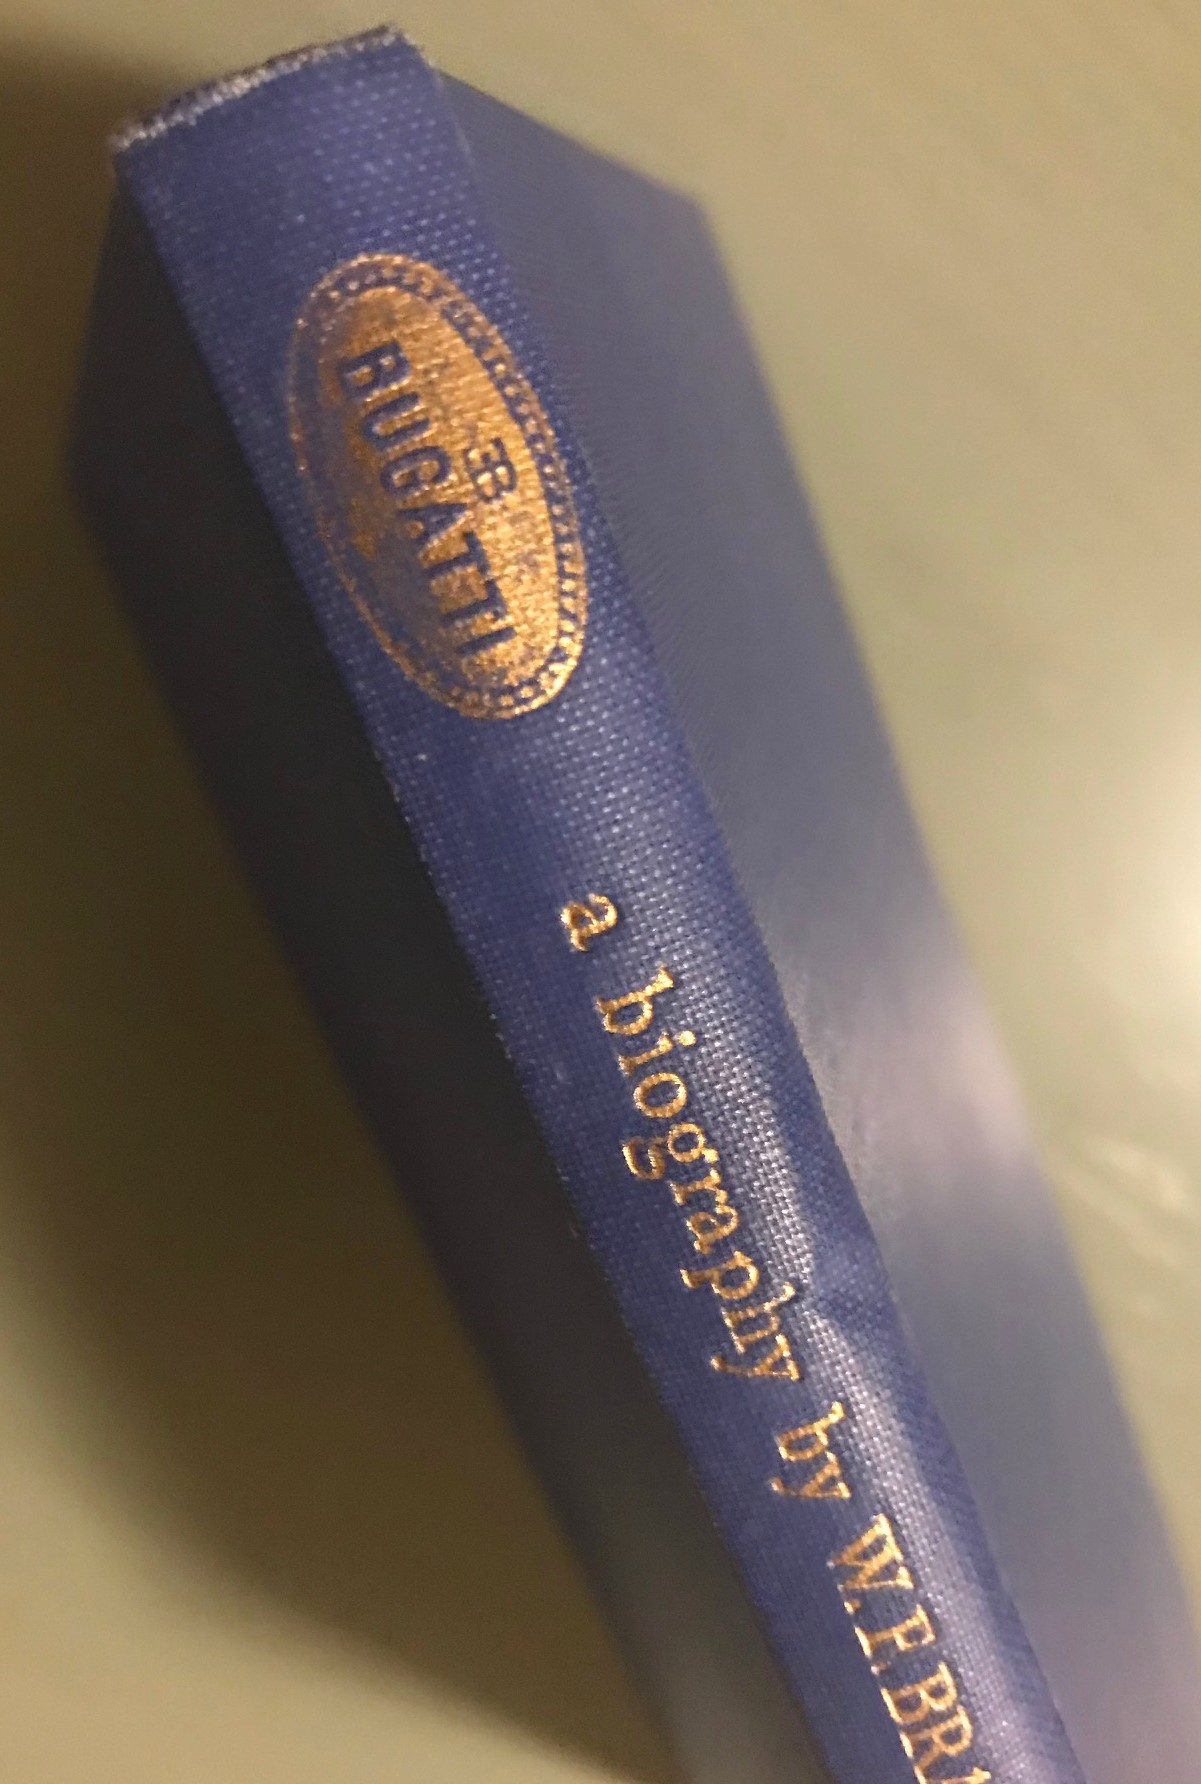 Ettore Bugatti by WF Bradley, 1a upplaga 1948, 152 sid, julkort, bokannons, original